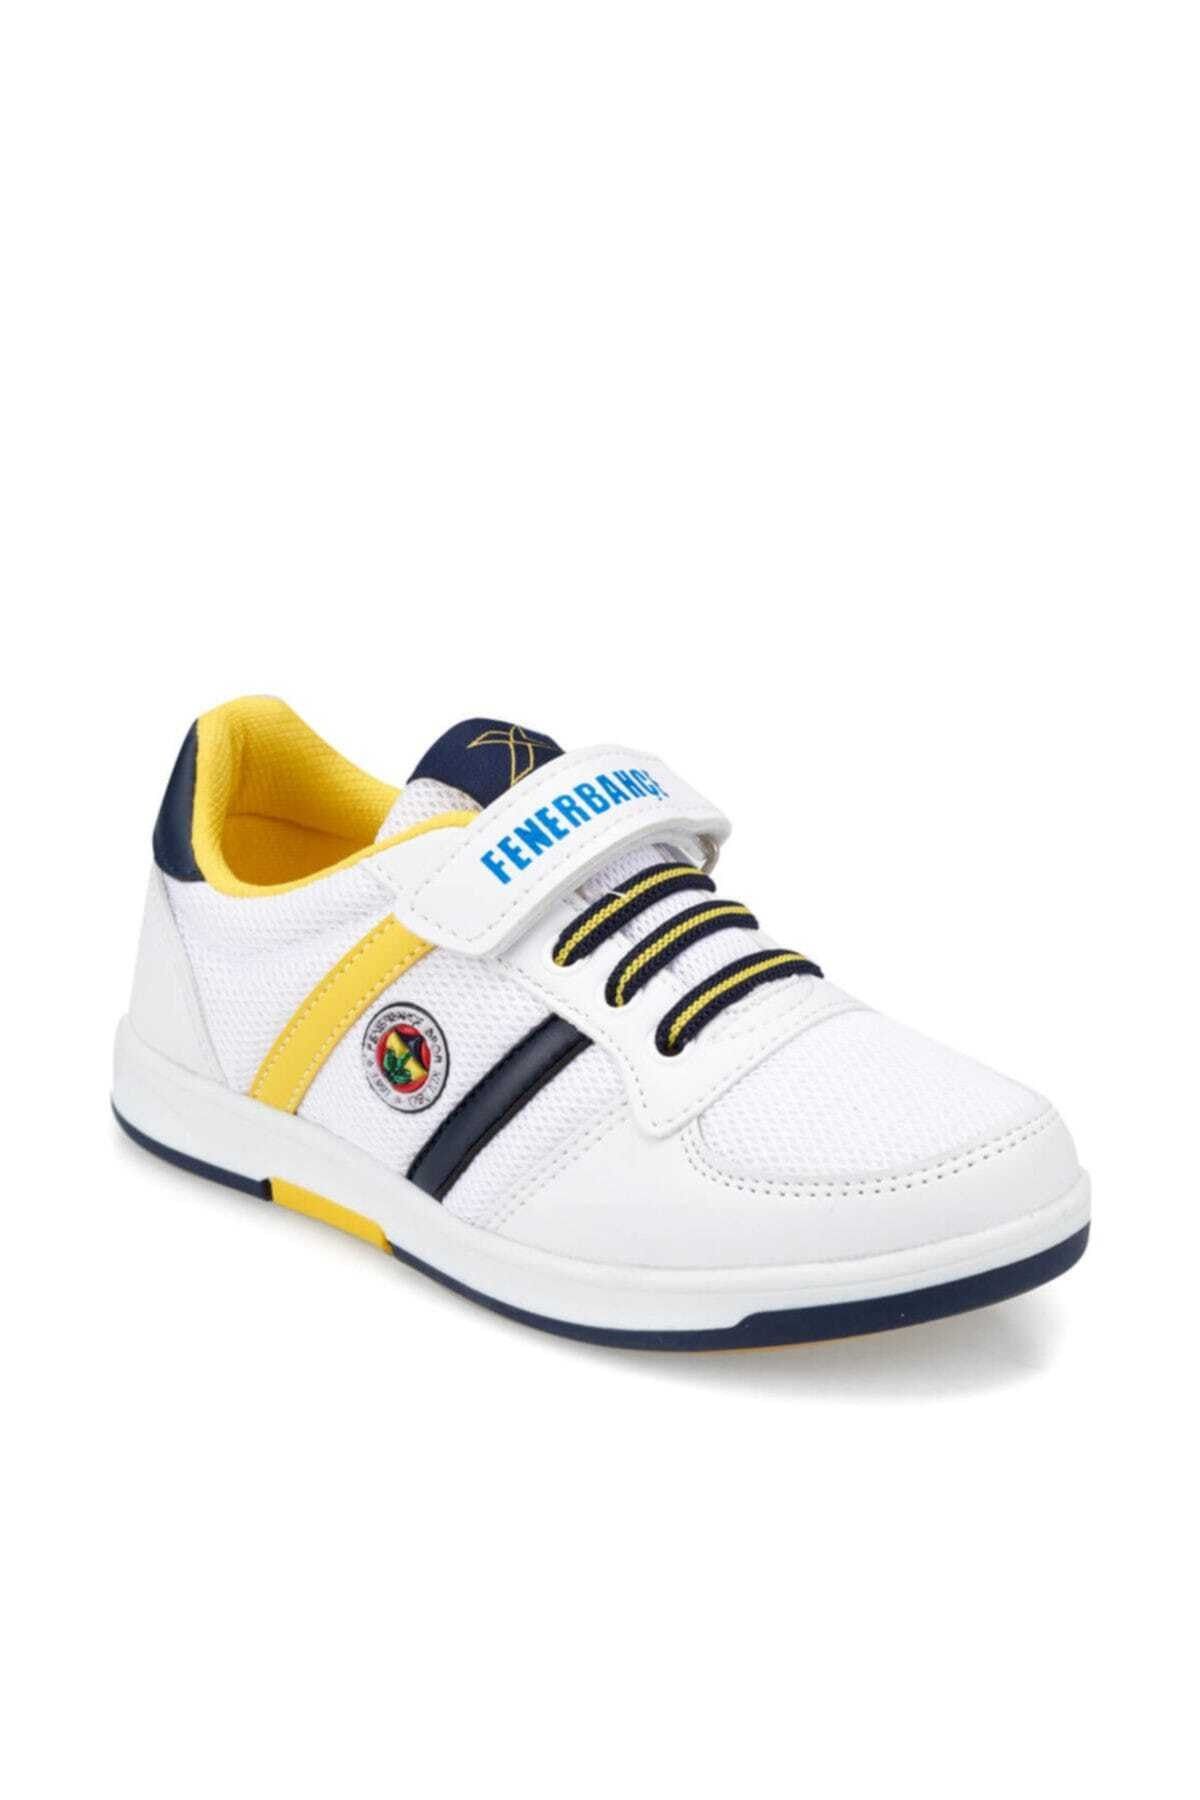 Fenerbahçe FB Upton J Fb Beyaz Lacivert Sarı Erkek Çocuk Sneaker Ayakkabı 100357718